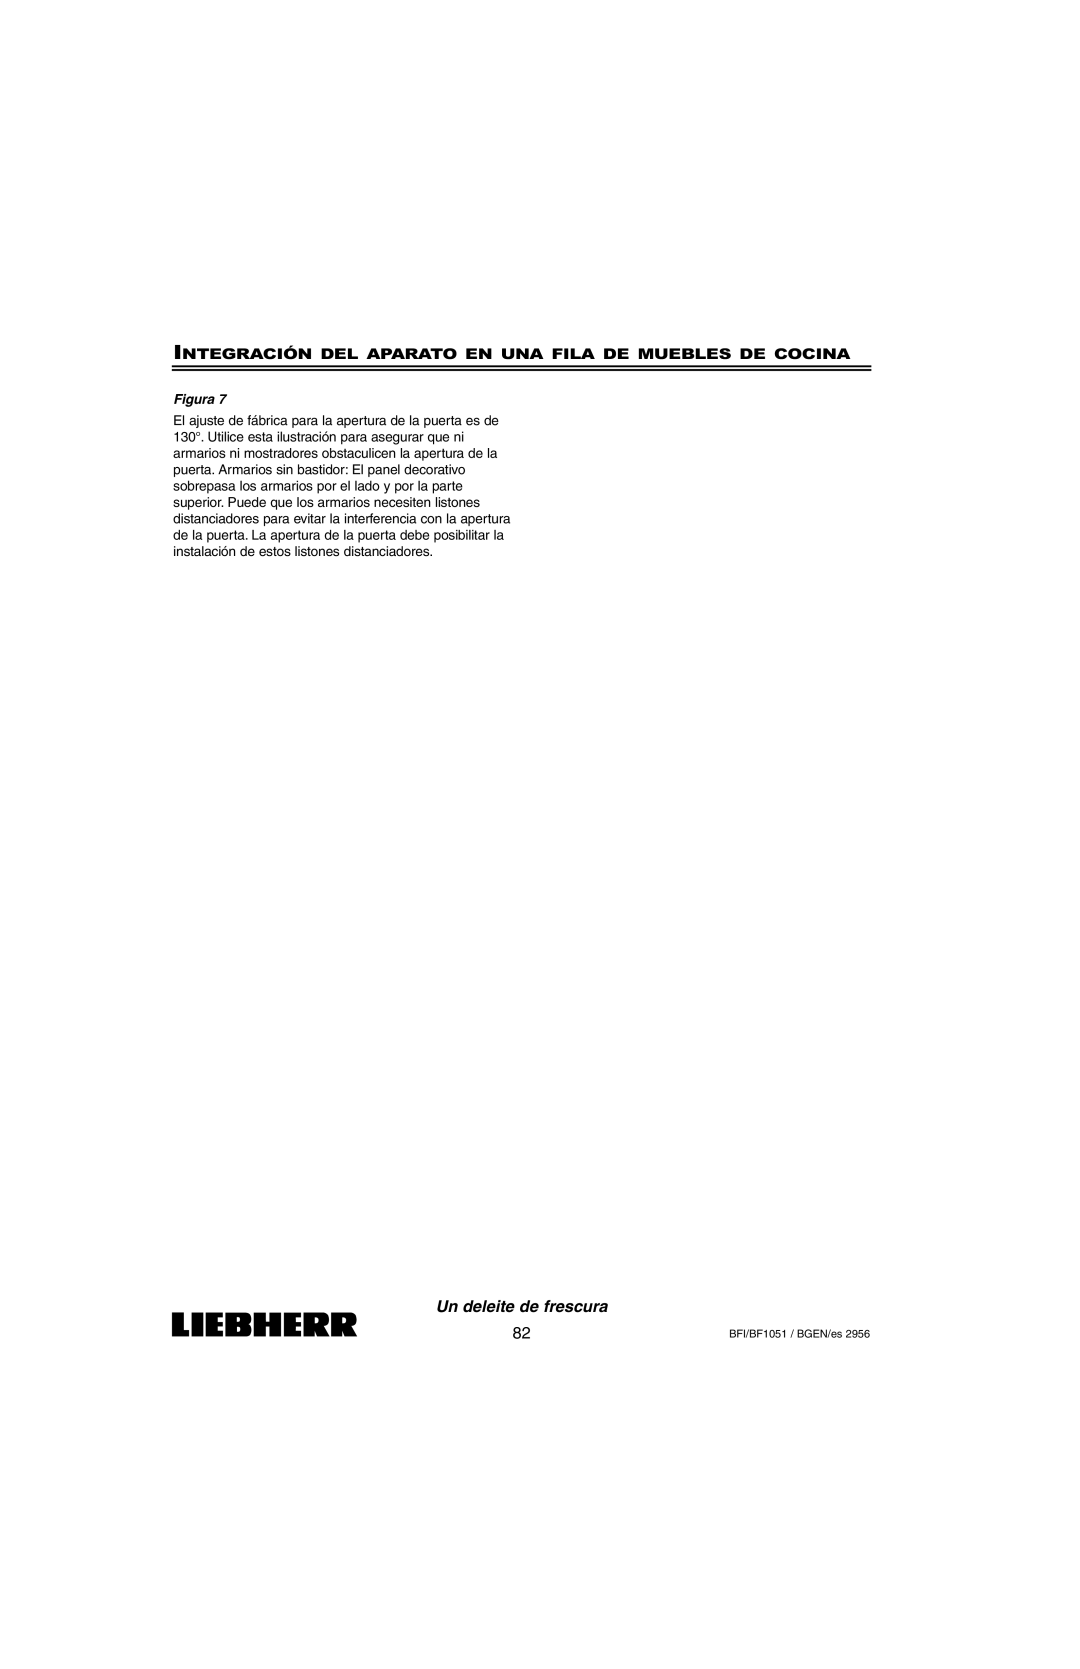 Liebherr BFI1051, BF1051 installation instructions Un deleite de frescura, Figura 